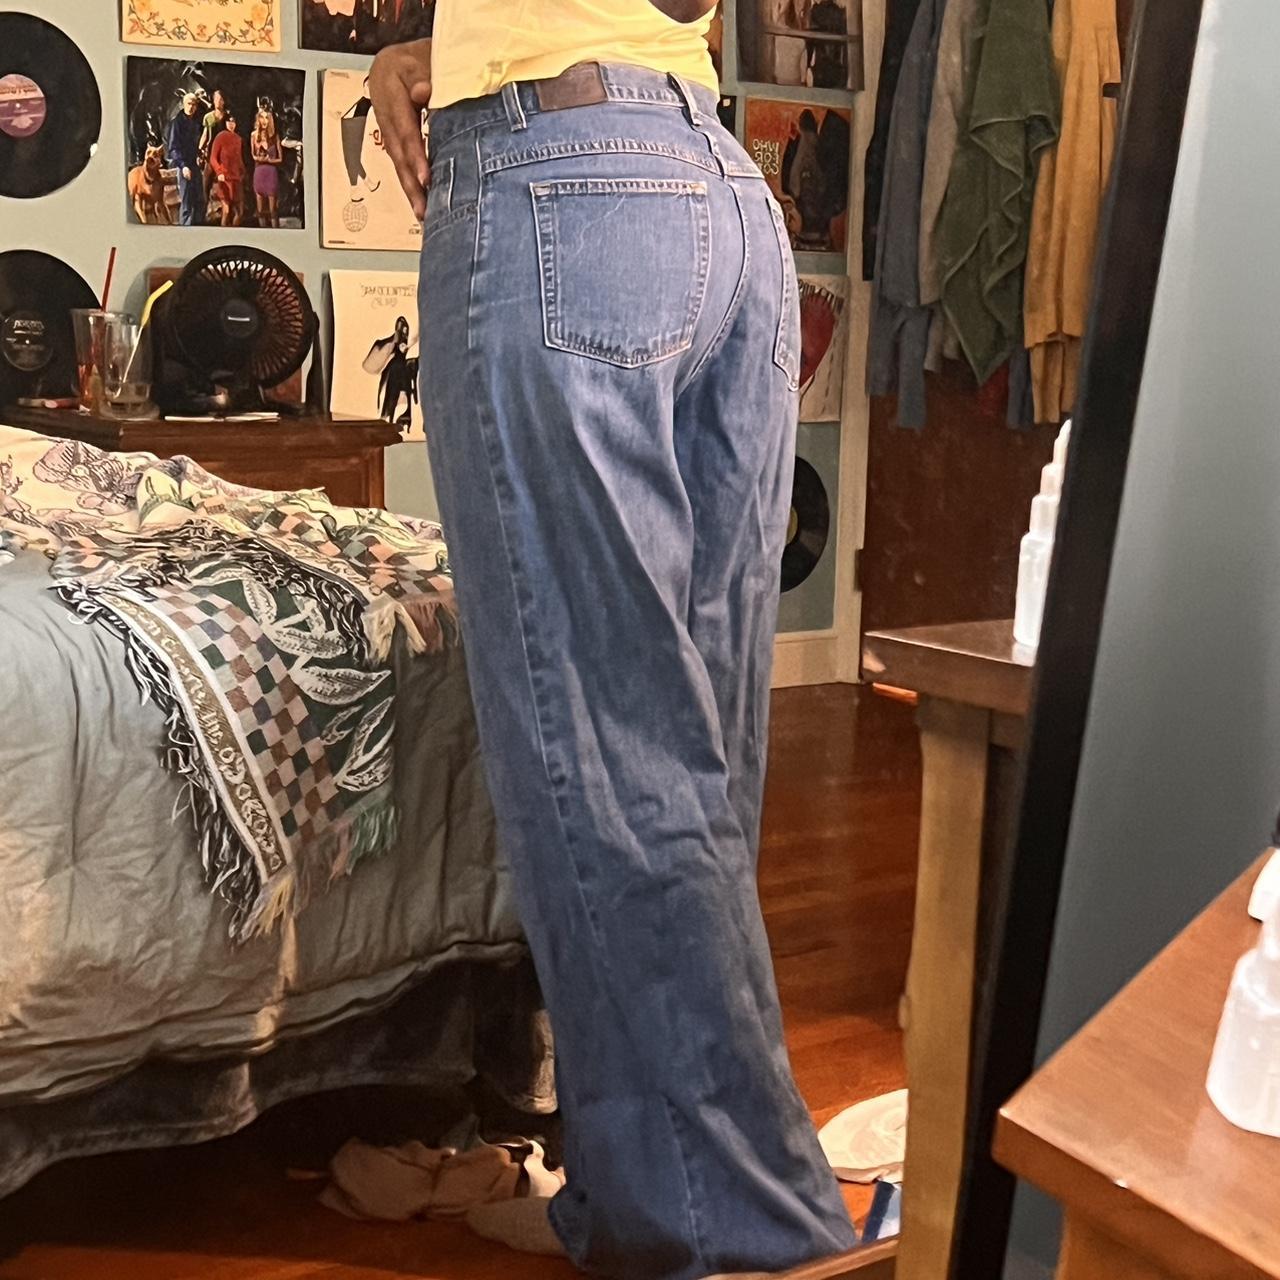 Vintage jeans 🐈‍⬛ I’m 5’10 waist 29’ - Depop